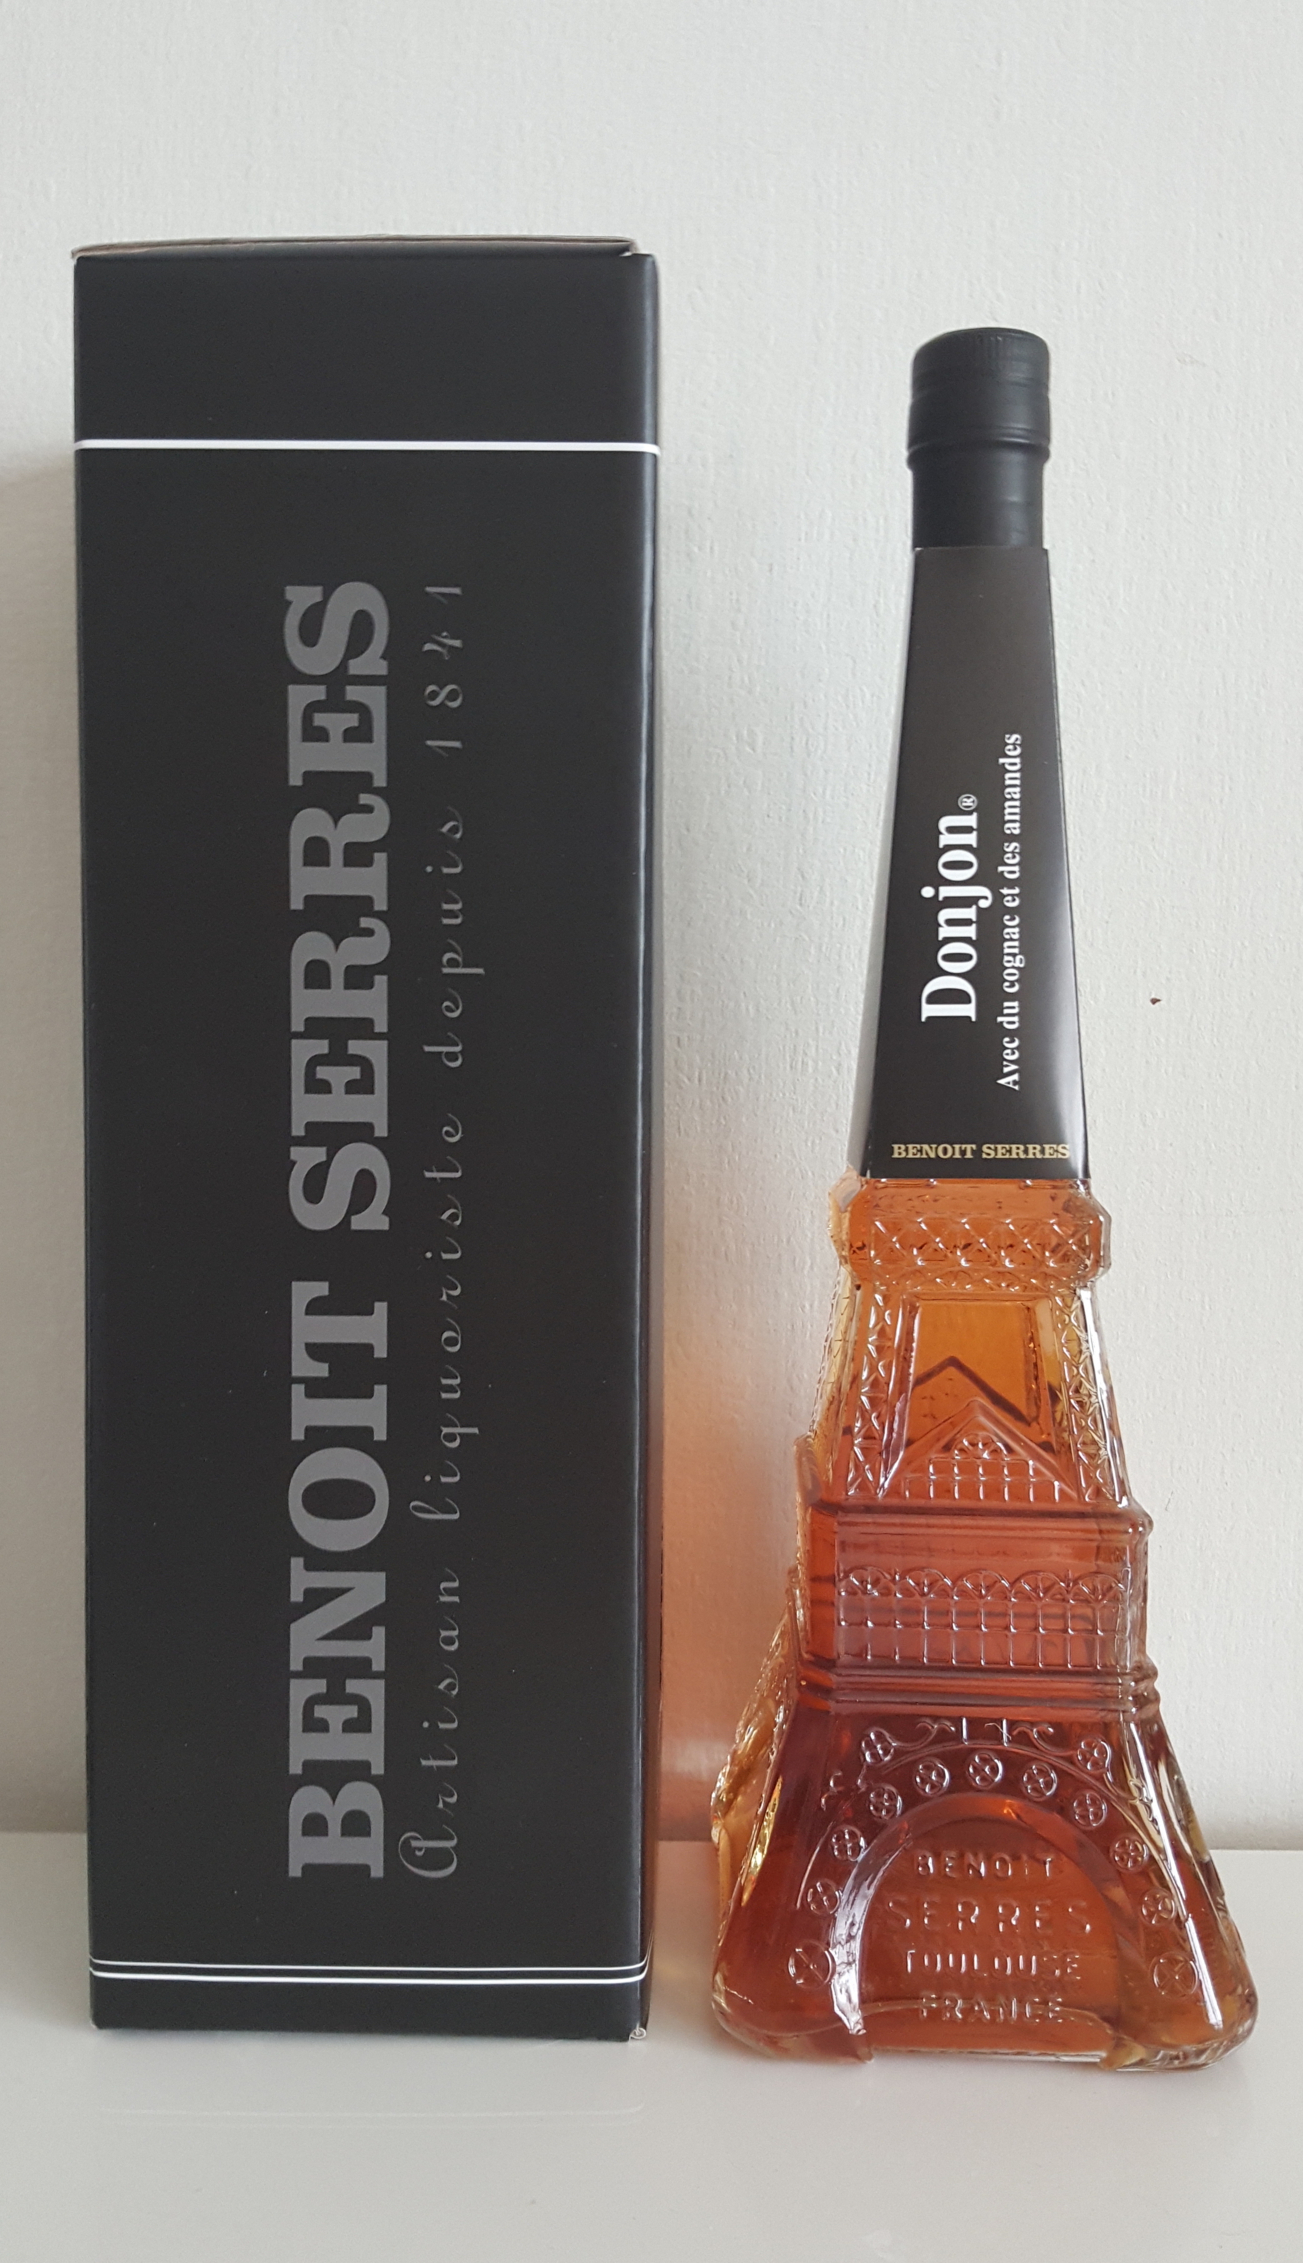 Donjon Benoit Serres - série spéciale bouteille Tour Eiffel